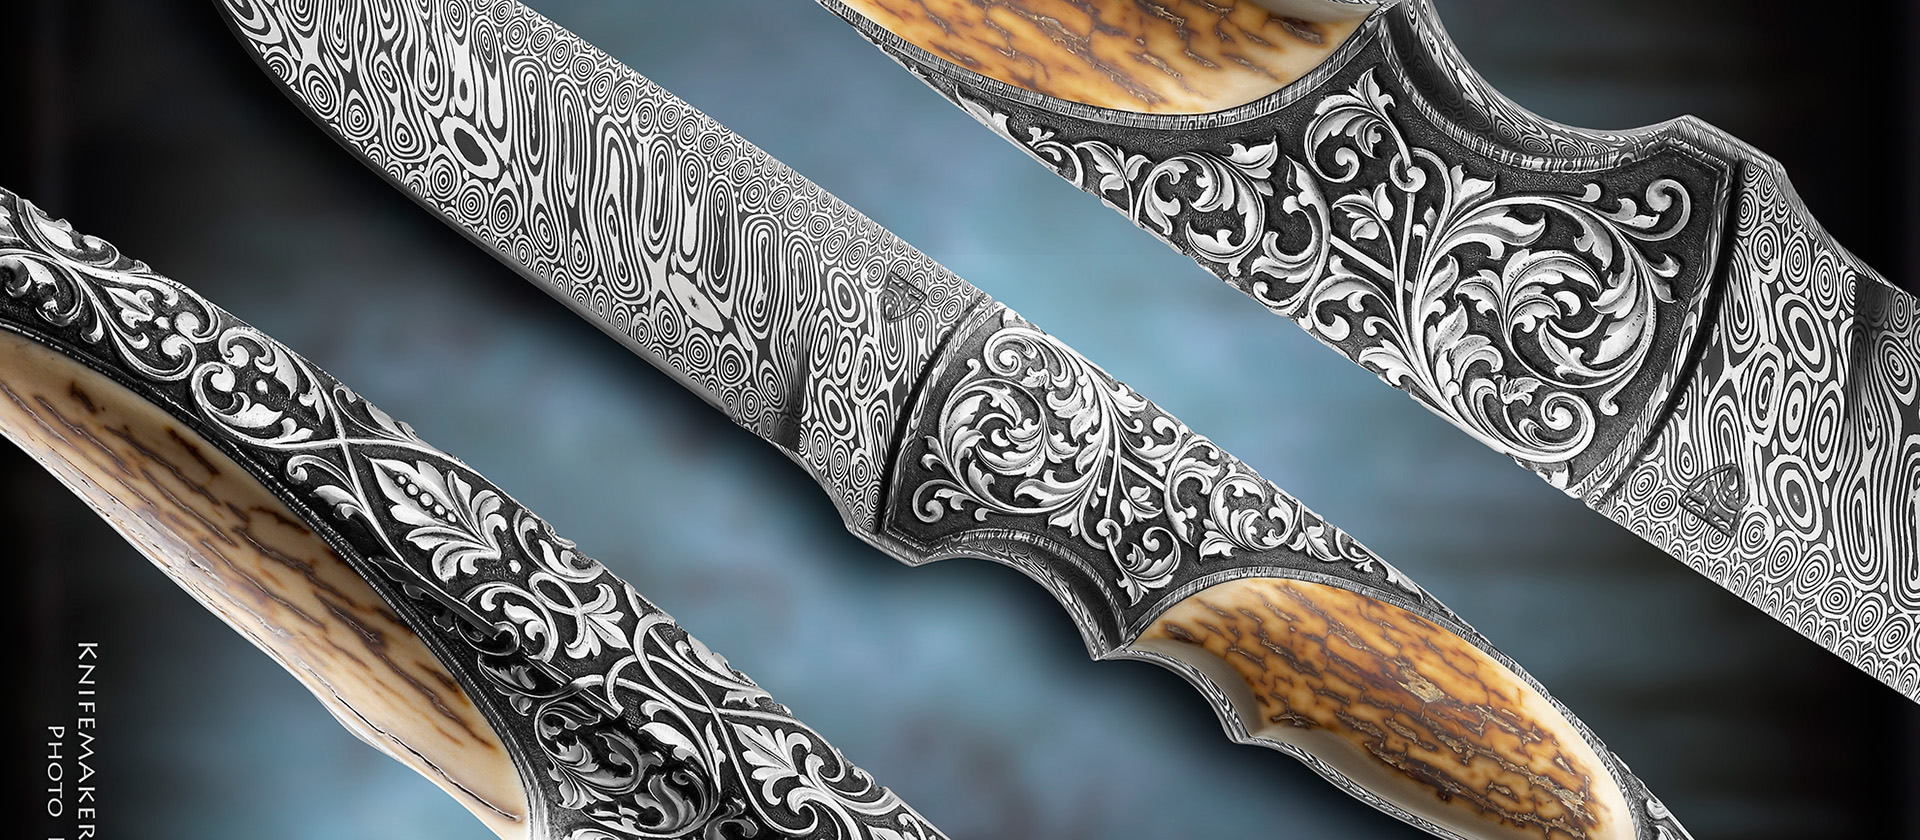 Knife - Steel Art